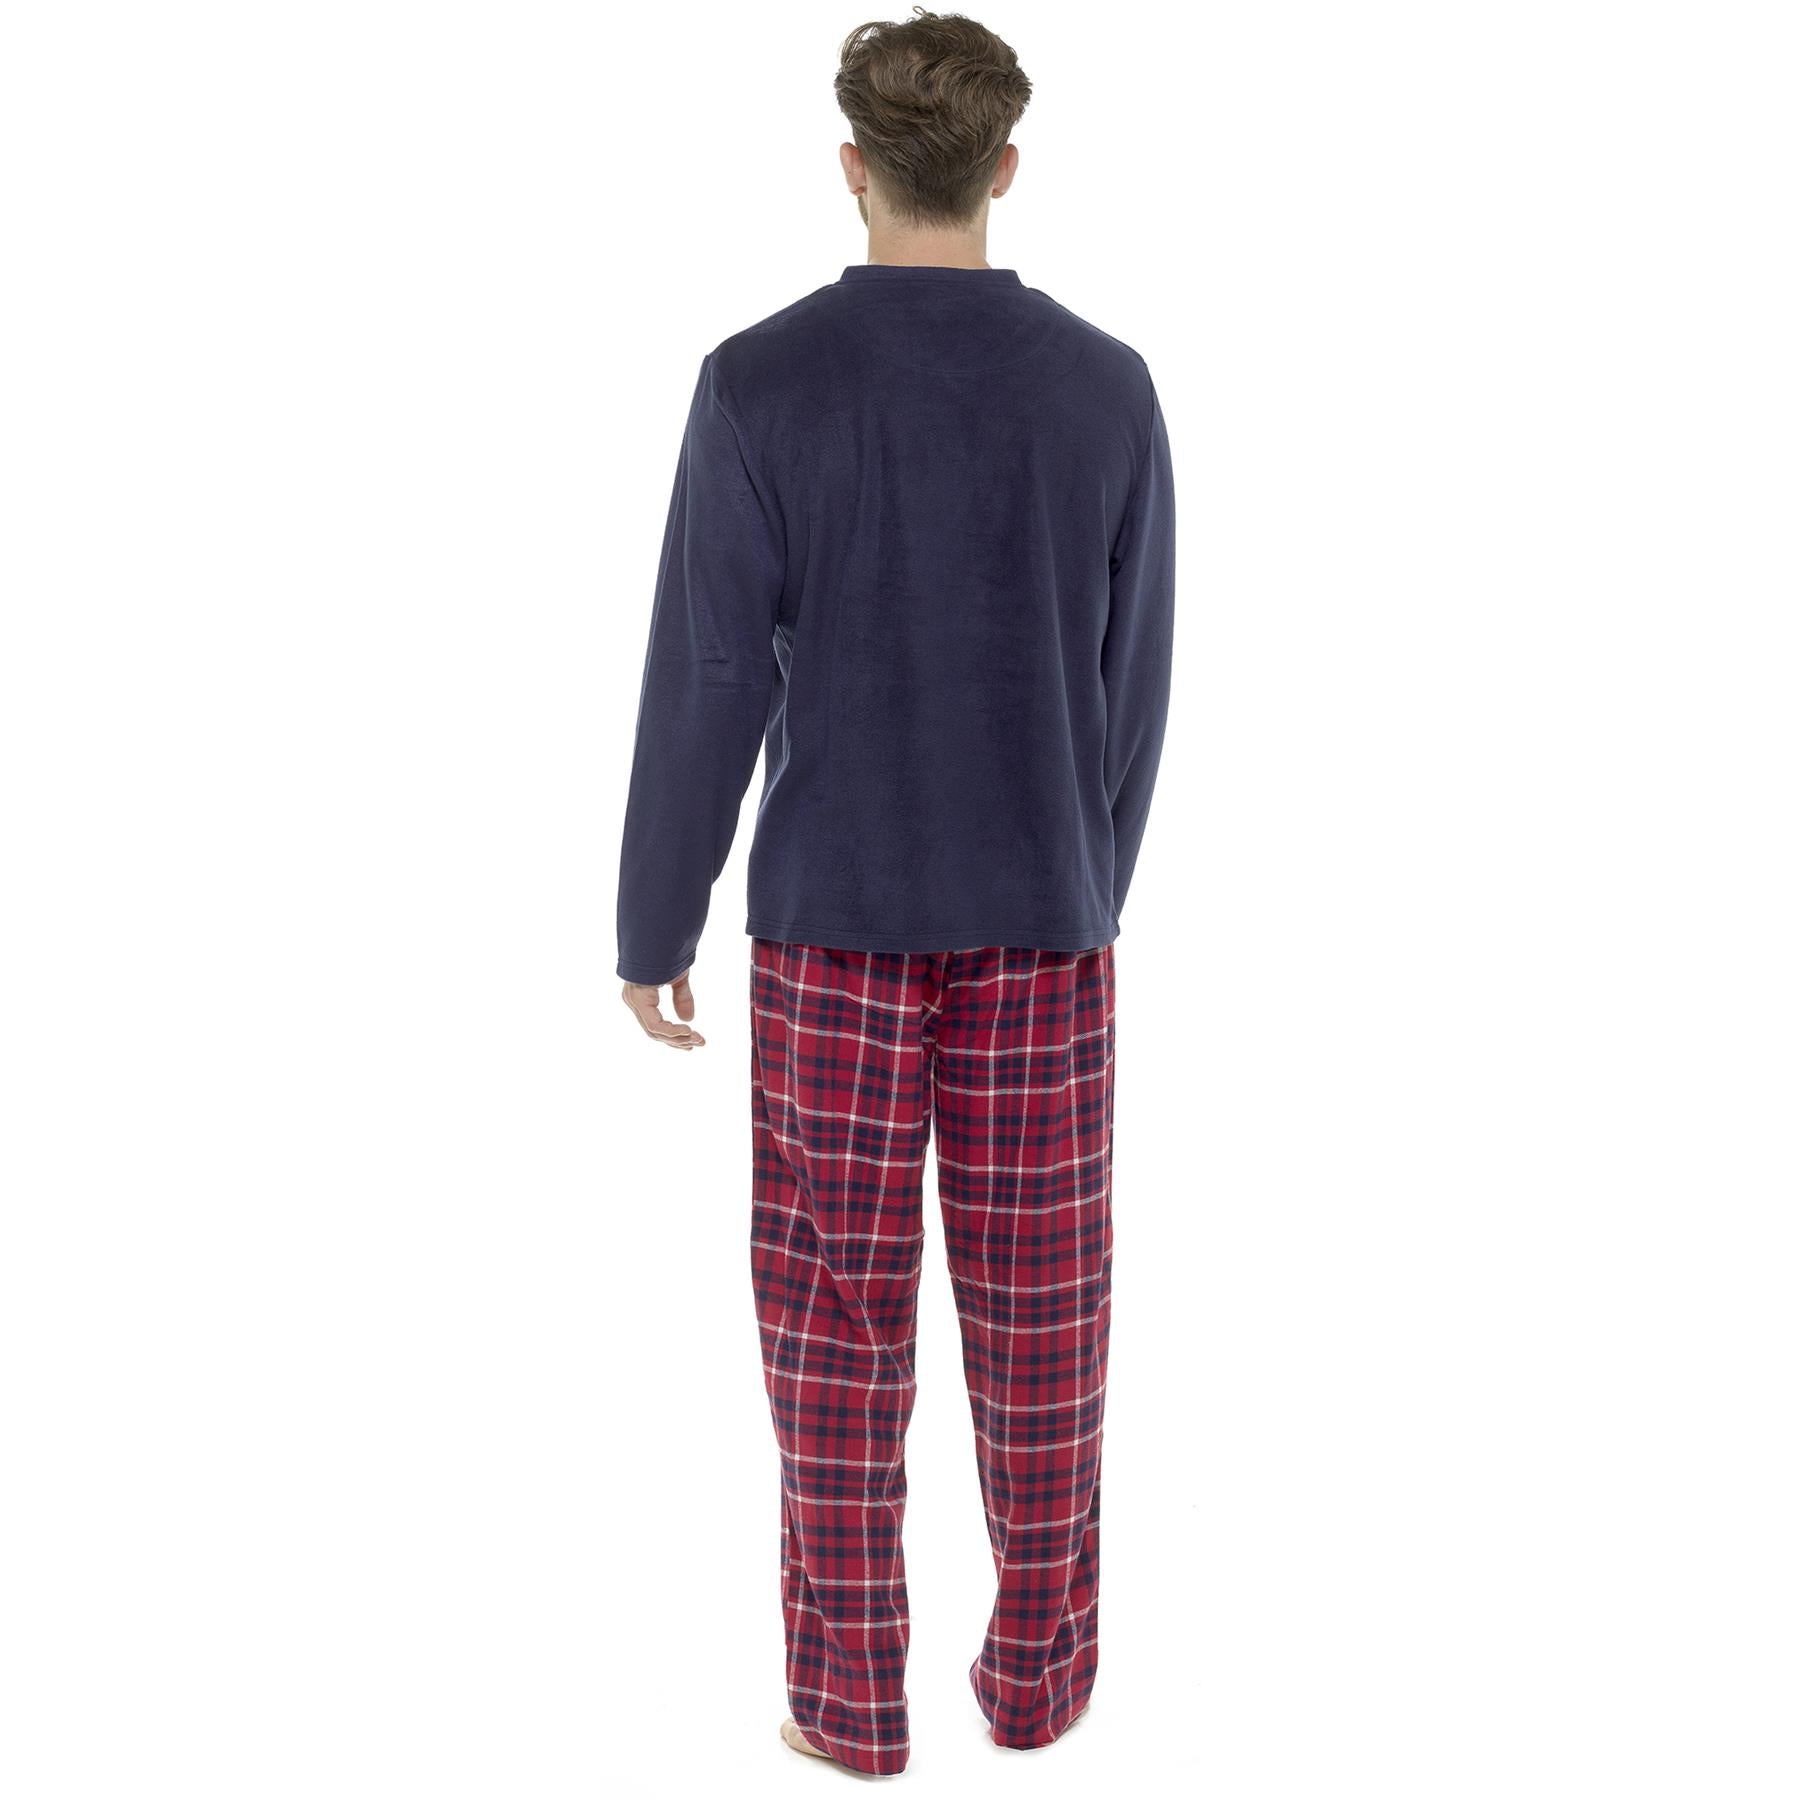 Grey Flannel Check Pants Pyjamas